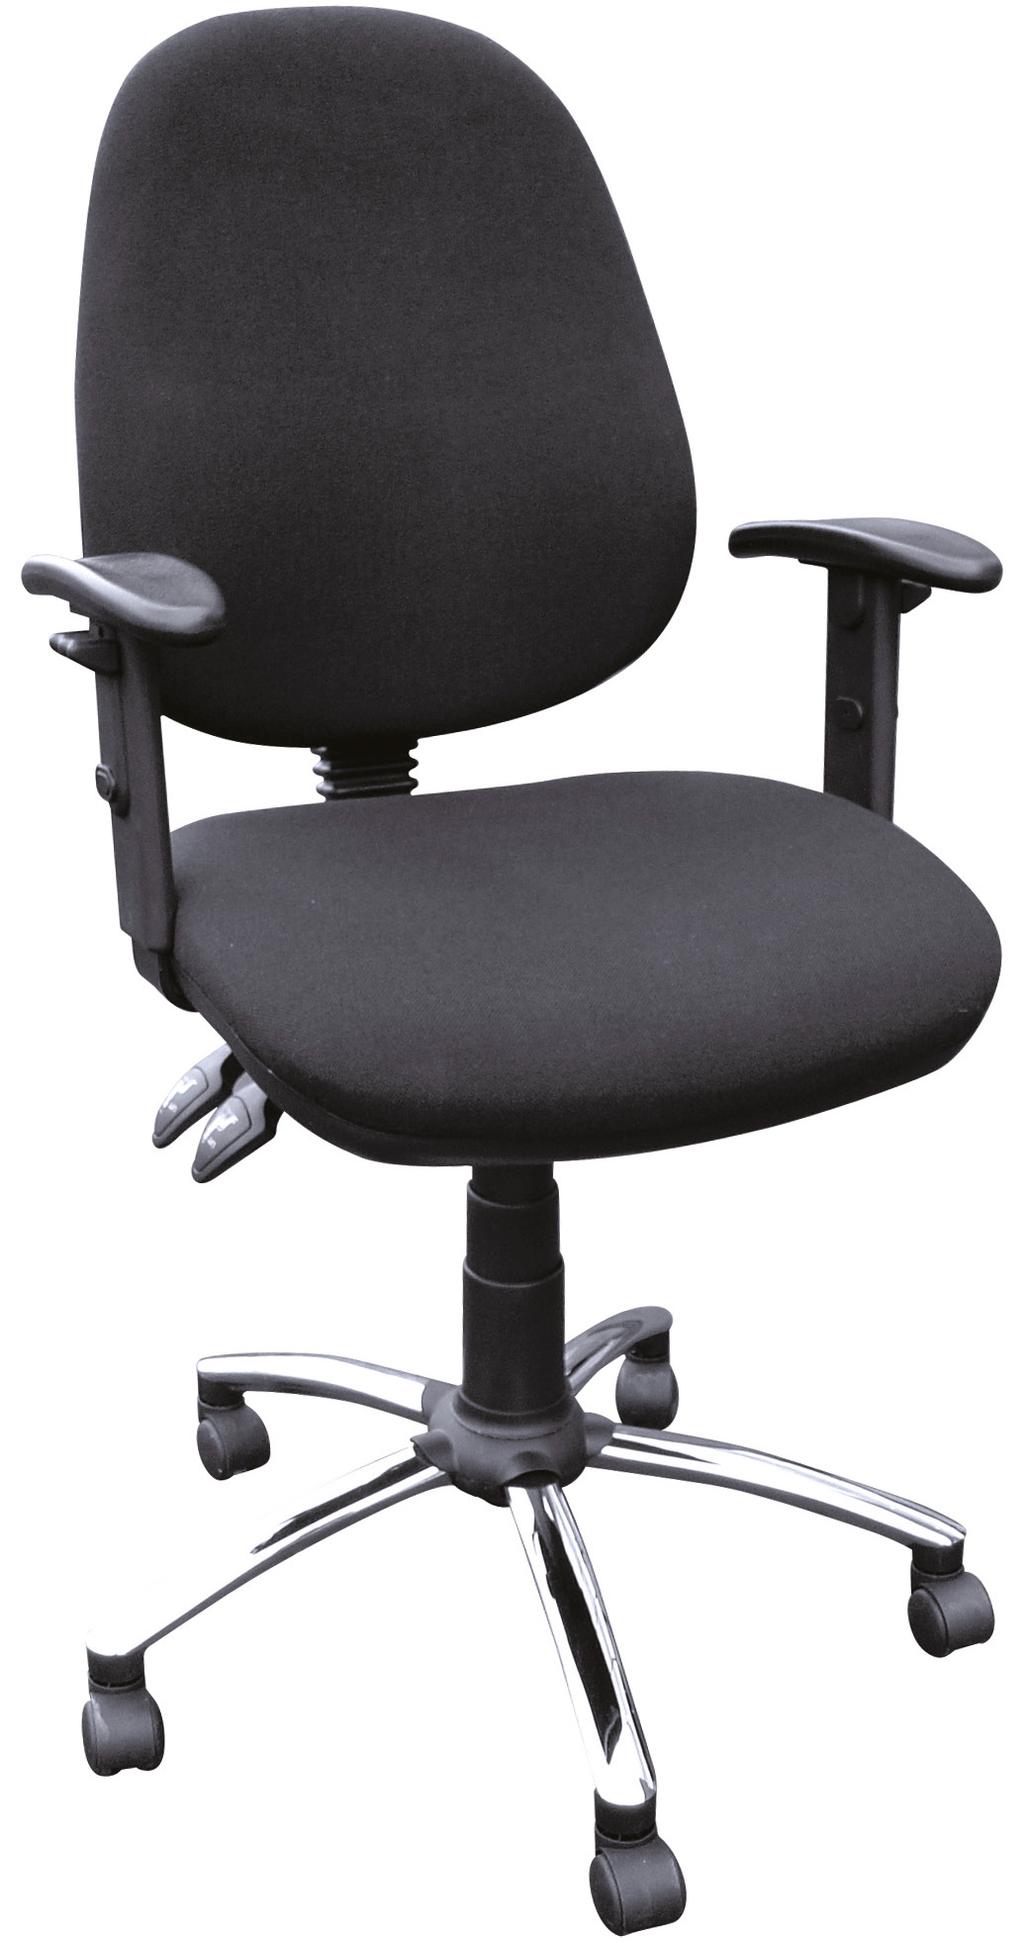 98.00 OC9A Task Chair